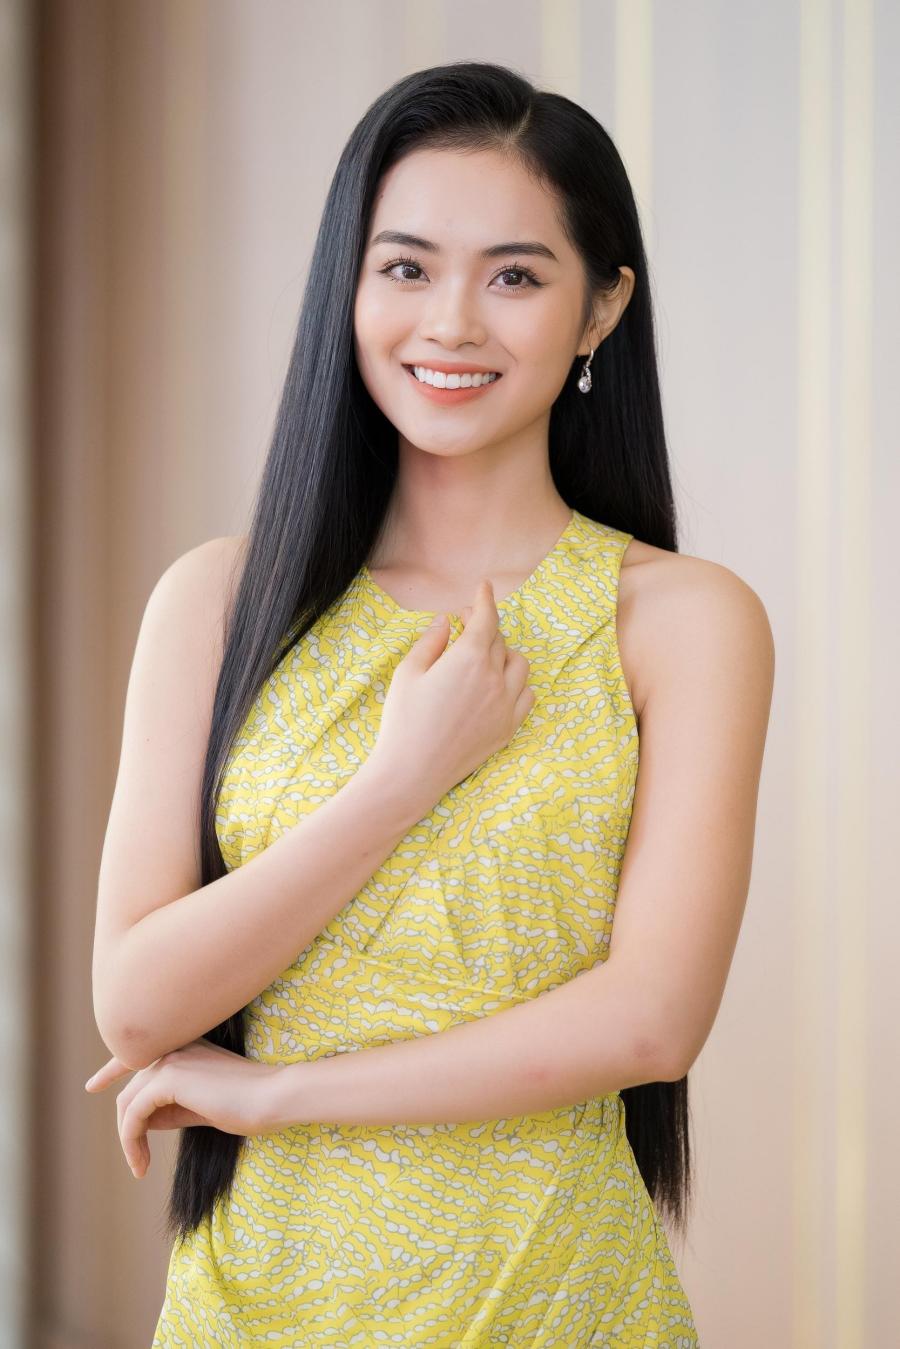 Tiểu thư RMIT gây chú ý tại Hoa hậu Việt Nam với chiếc váy hở vòng 1 ghi điểm - 6